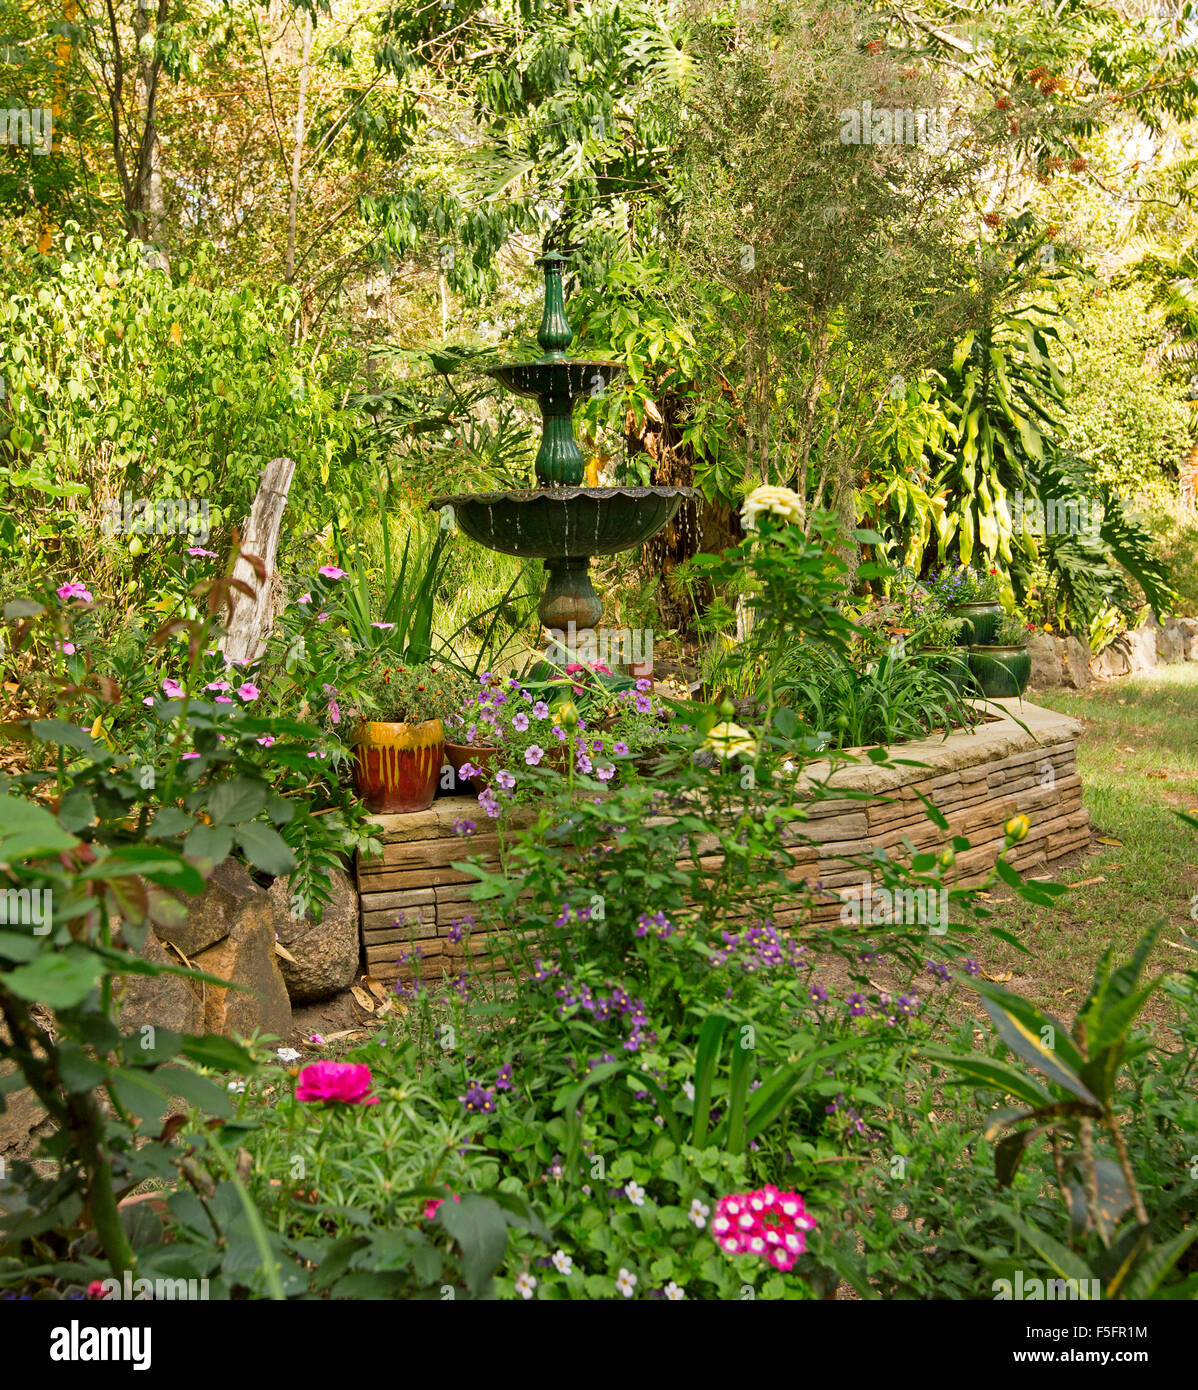 Giardino decorativo caratteristica con un basso muro di pietra, fontana ornata, piante in contenitori e orlate da prato, fiori, arbusti, alberi Foto Stock